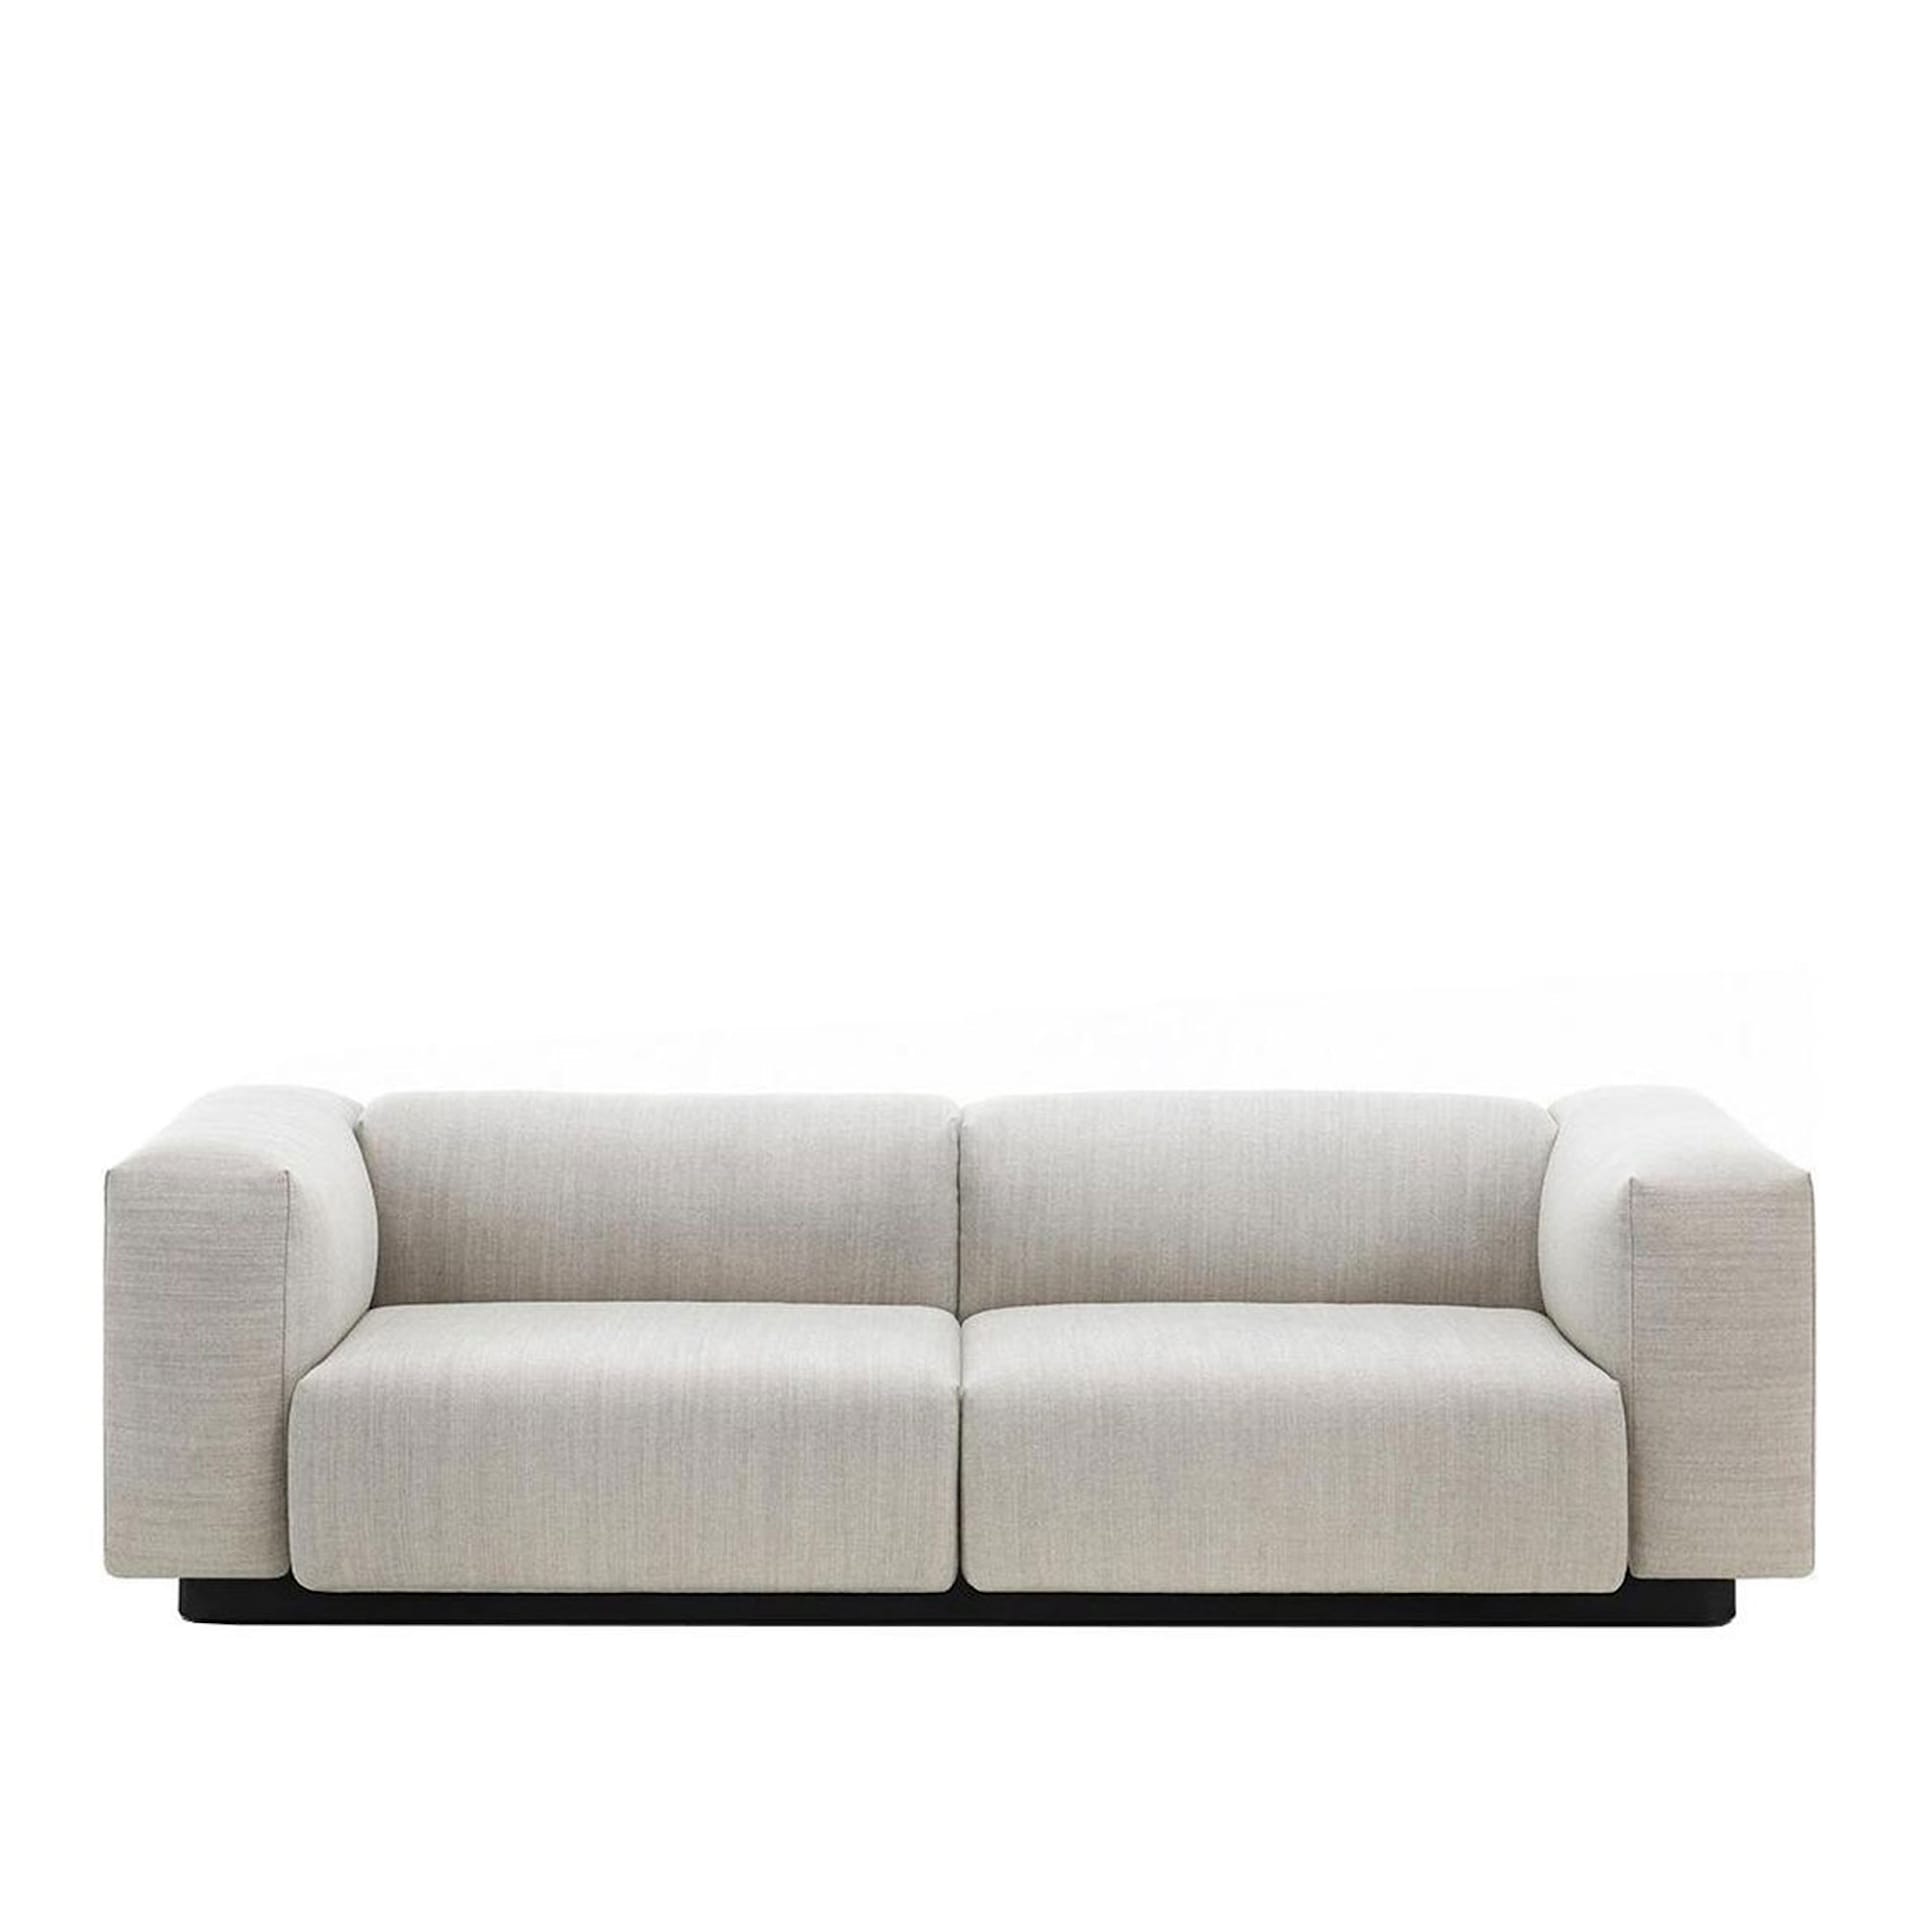 Soft Modular Sofa - 2-seter - Vitra - Jasper Morrison - NO GA